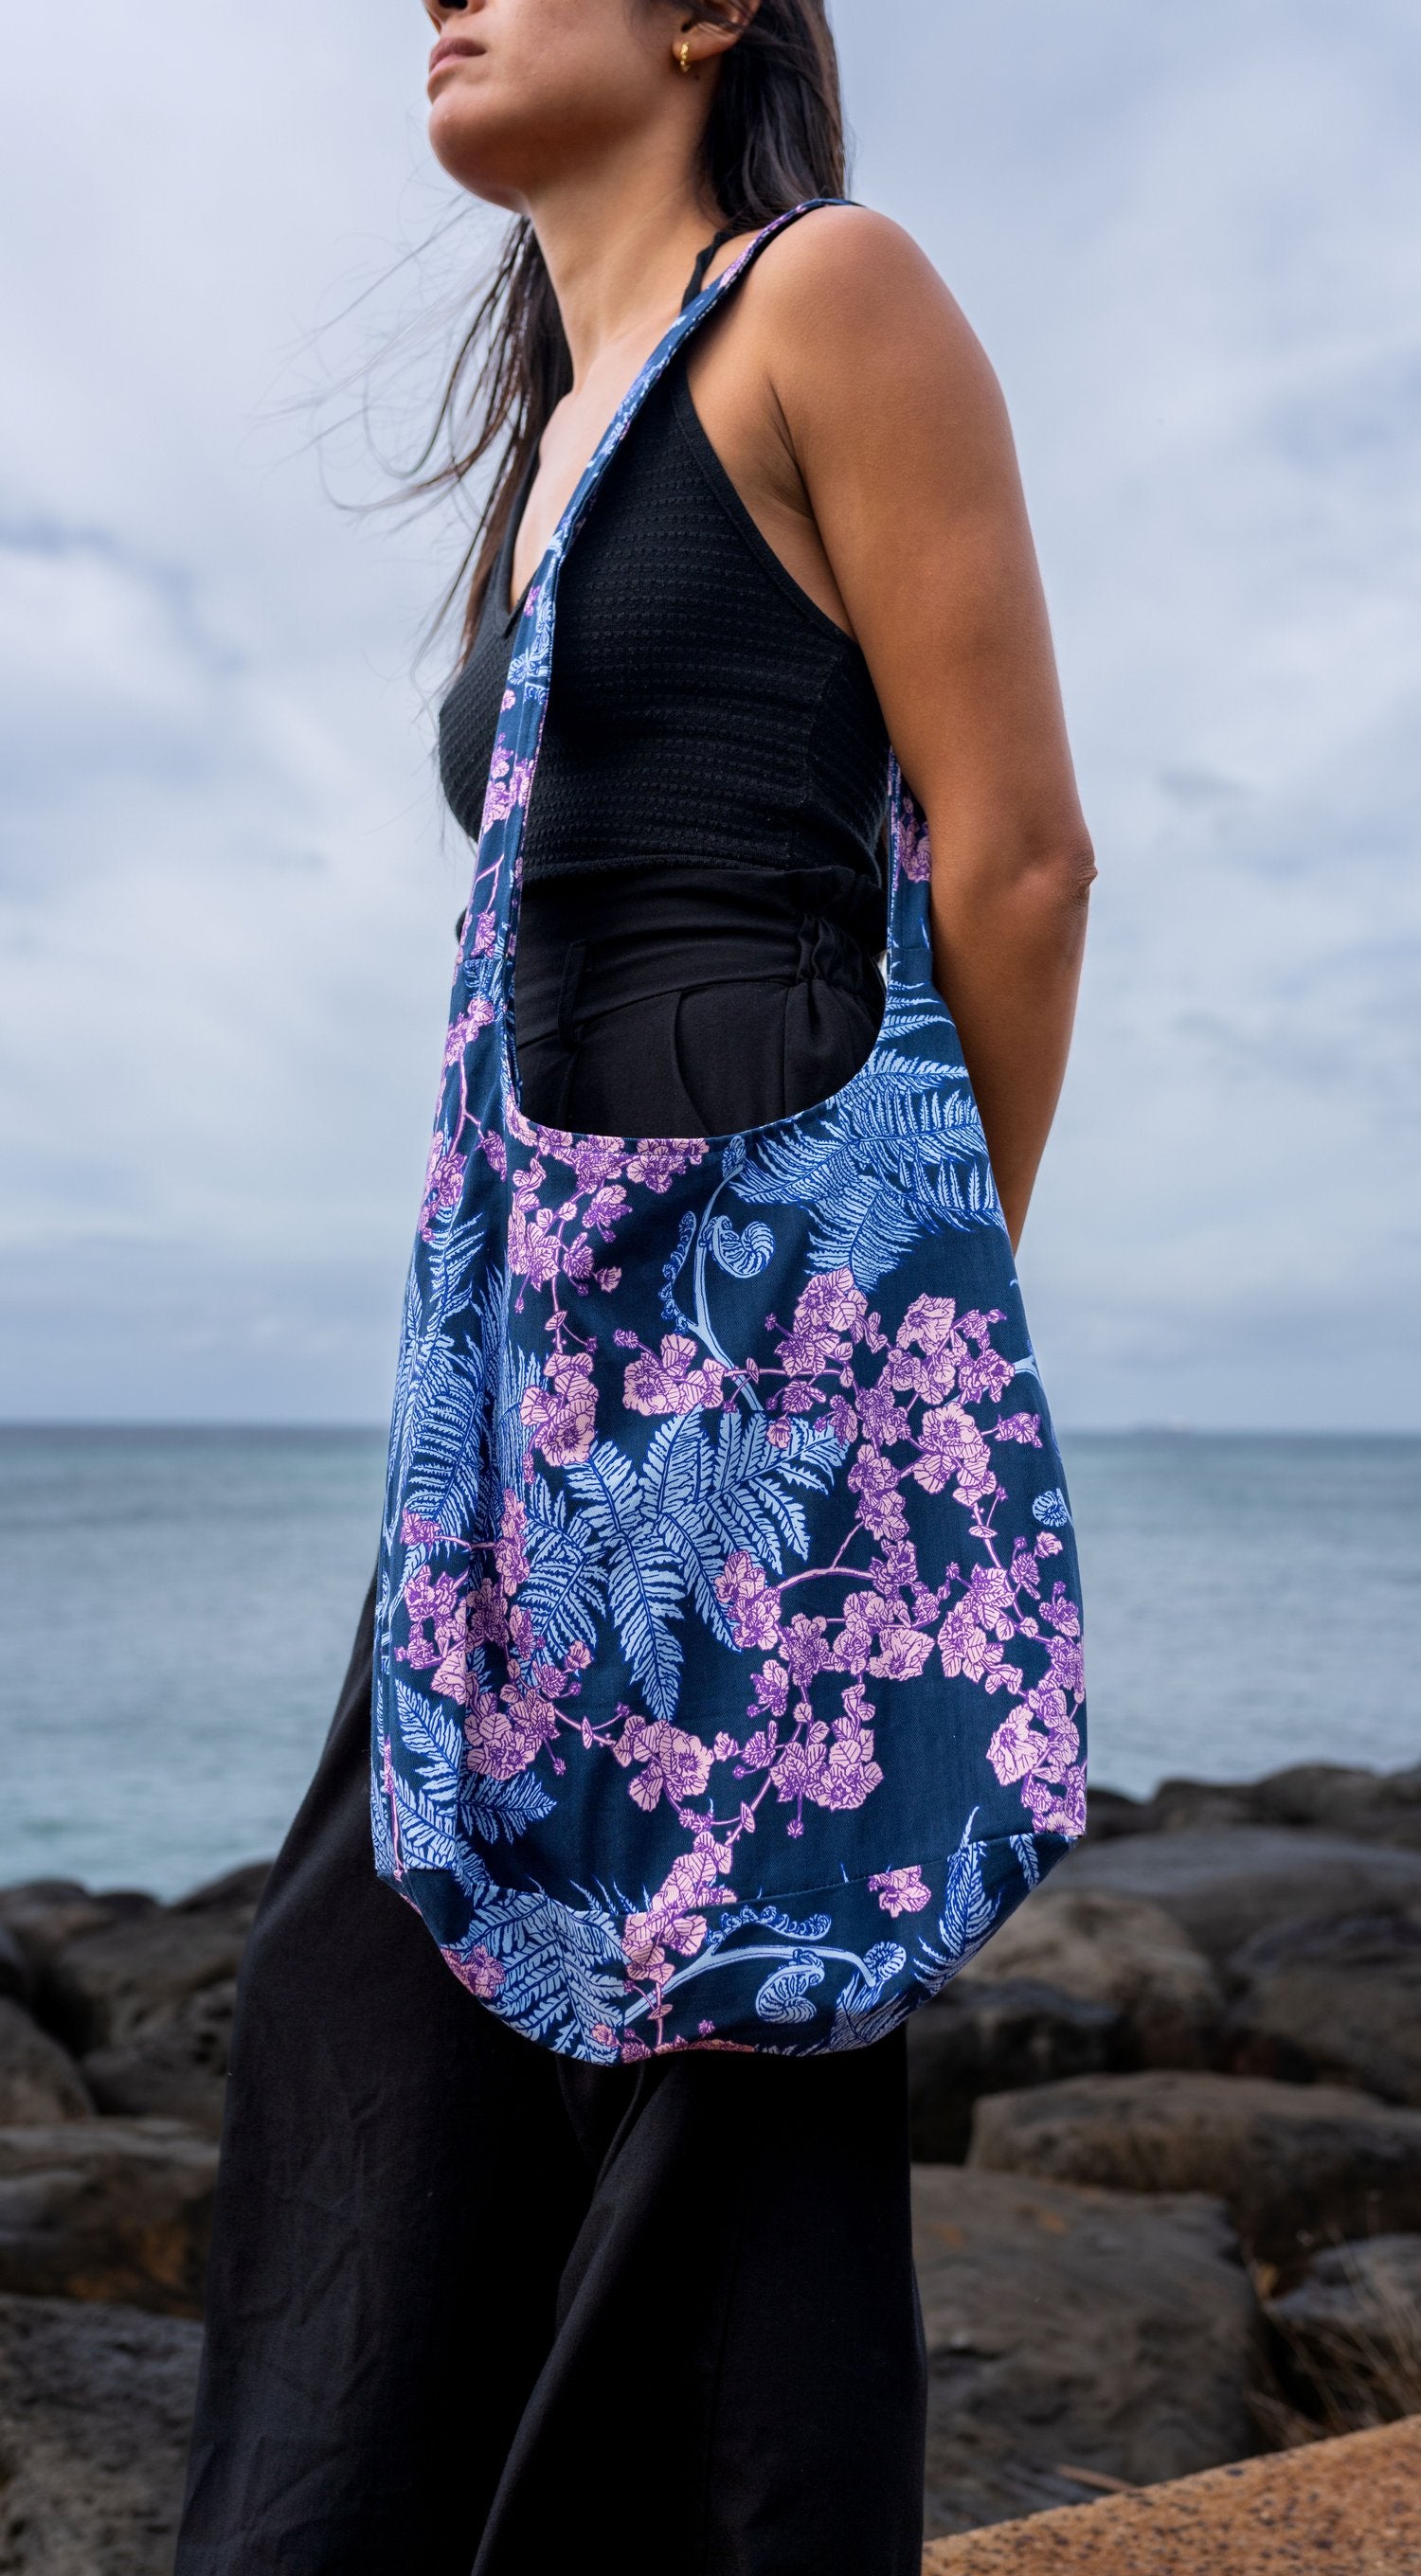 Pop-Up Mākeke - David Shepard Hawaii - Hāpuʻu 'Ilima Mauka to Makai Blue Tote Bag